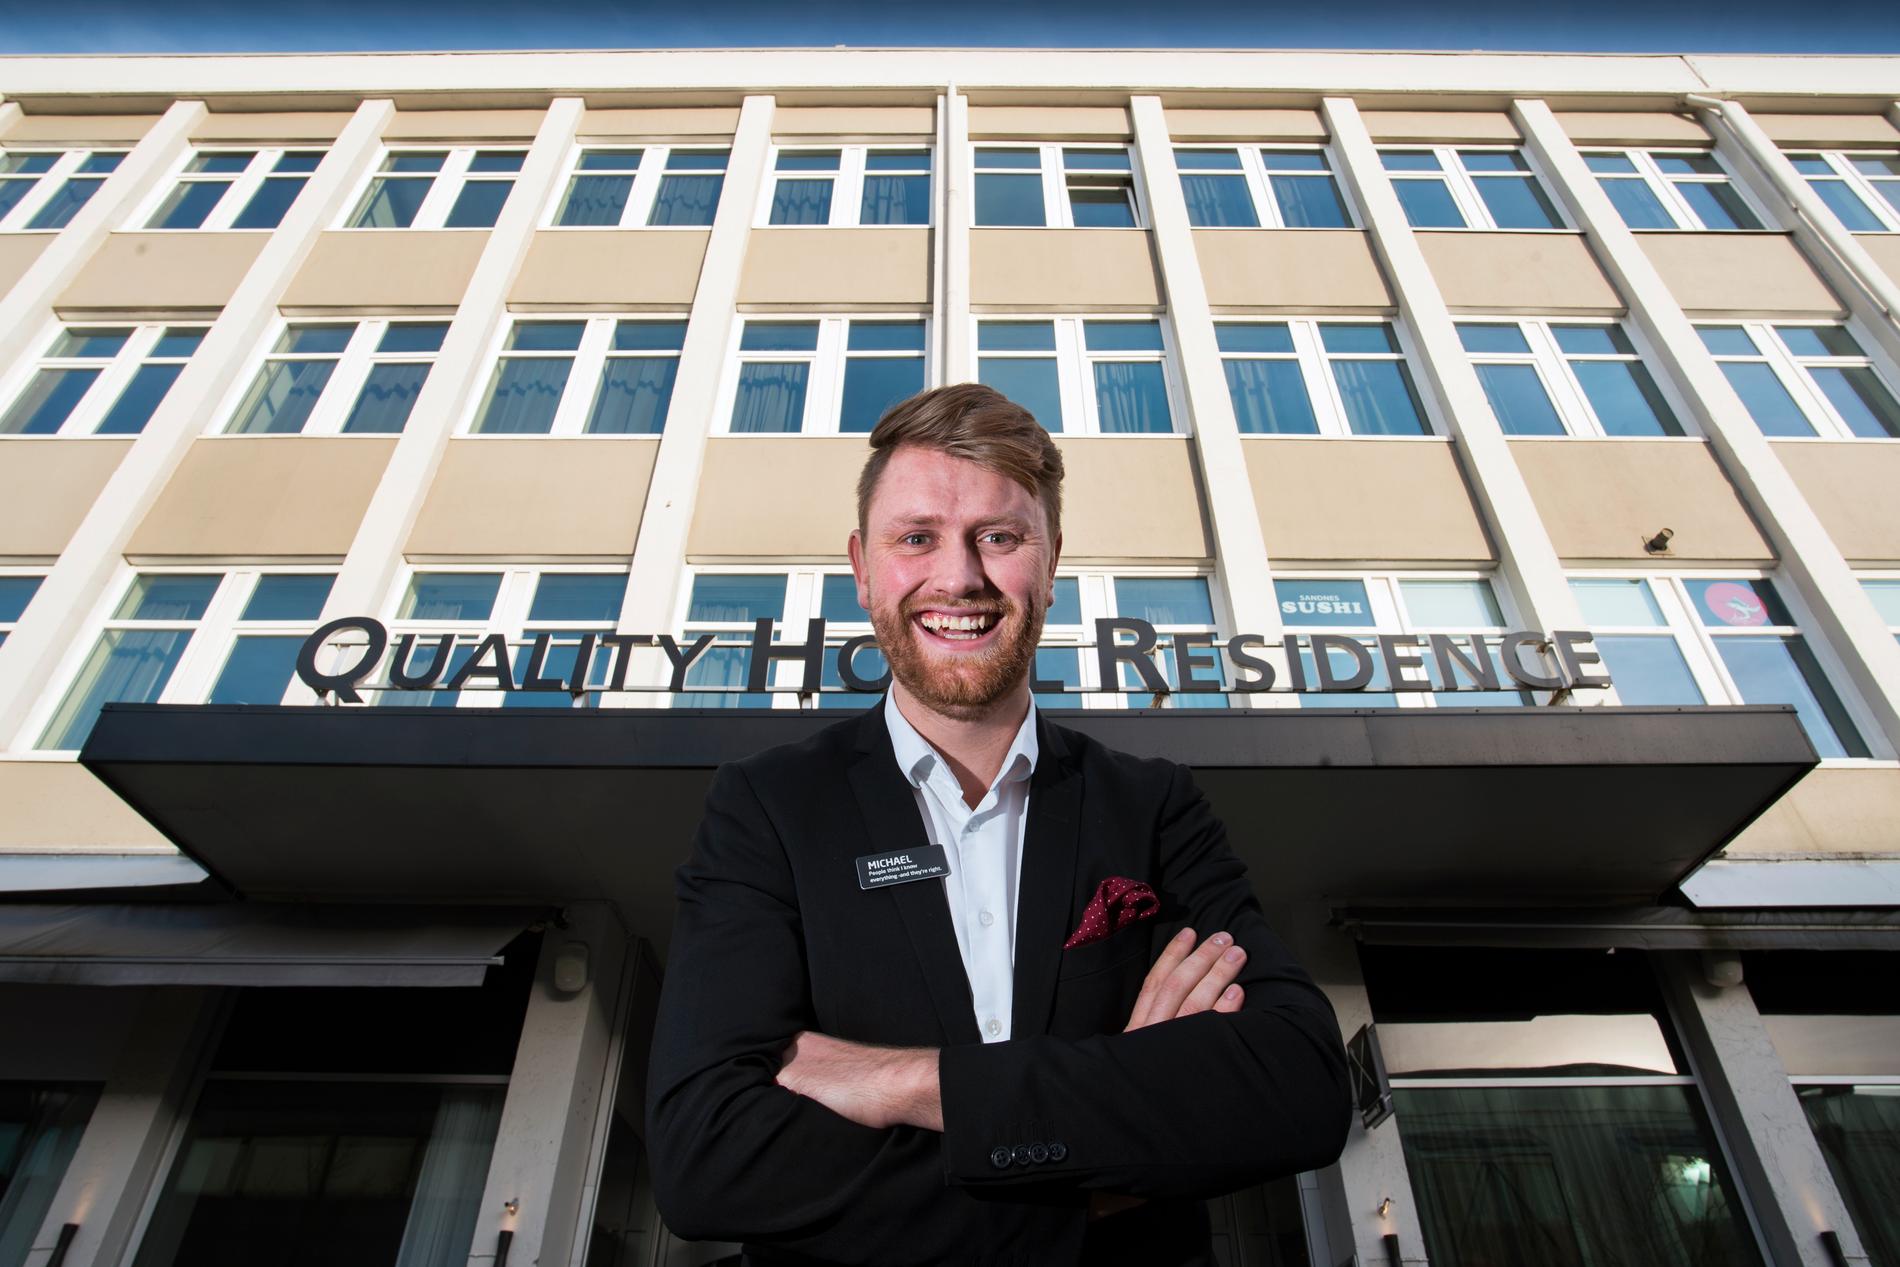  Michael Holm har klatret raskt i gradene. Nå er 26-åringen hotelldirektør ved Quality Hotel Residence i Sandnes. 